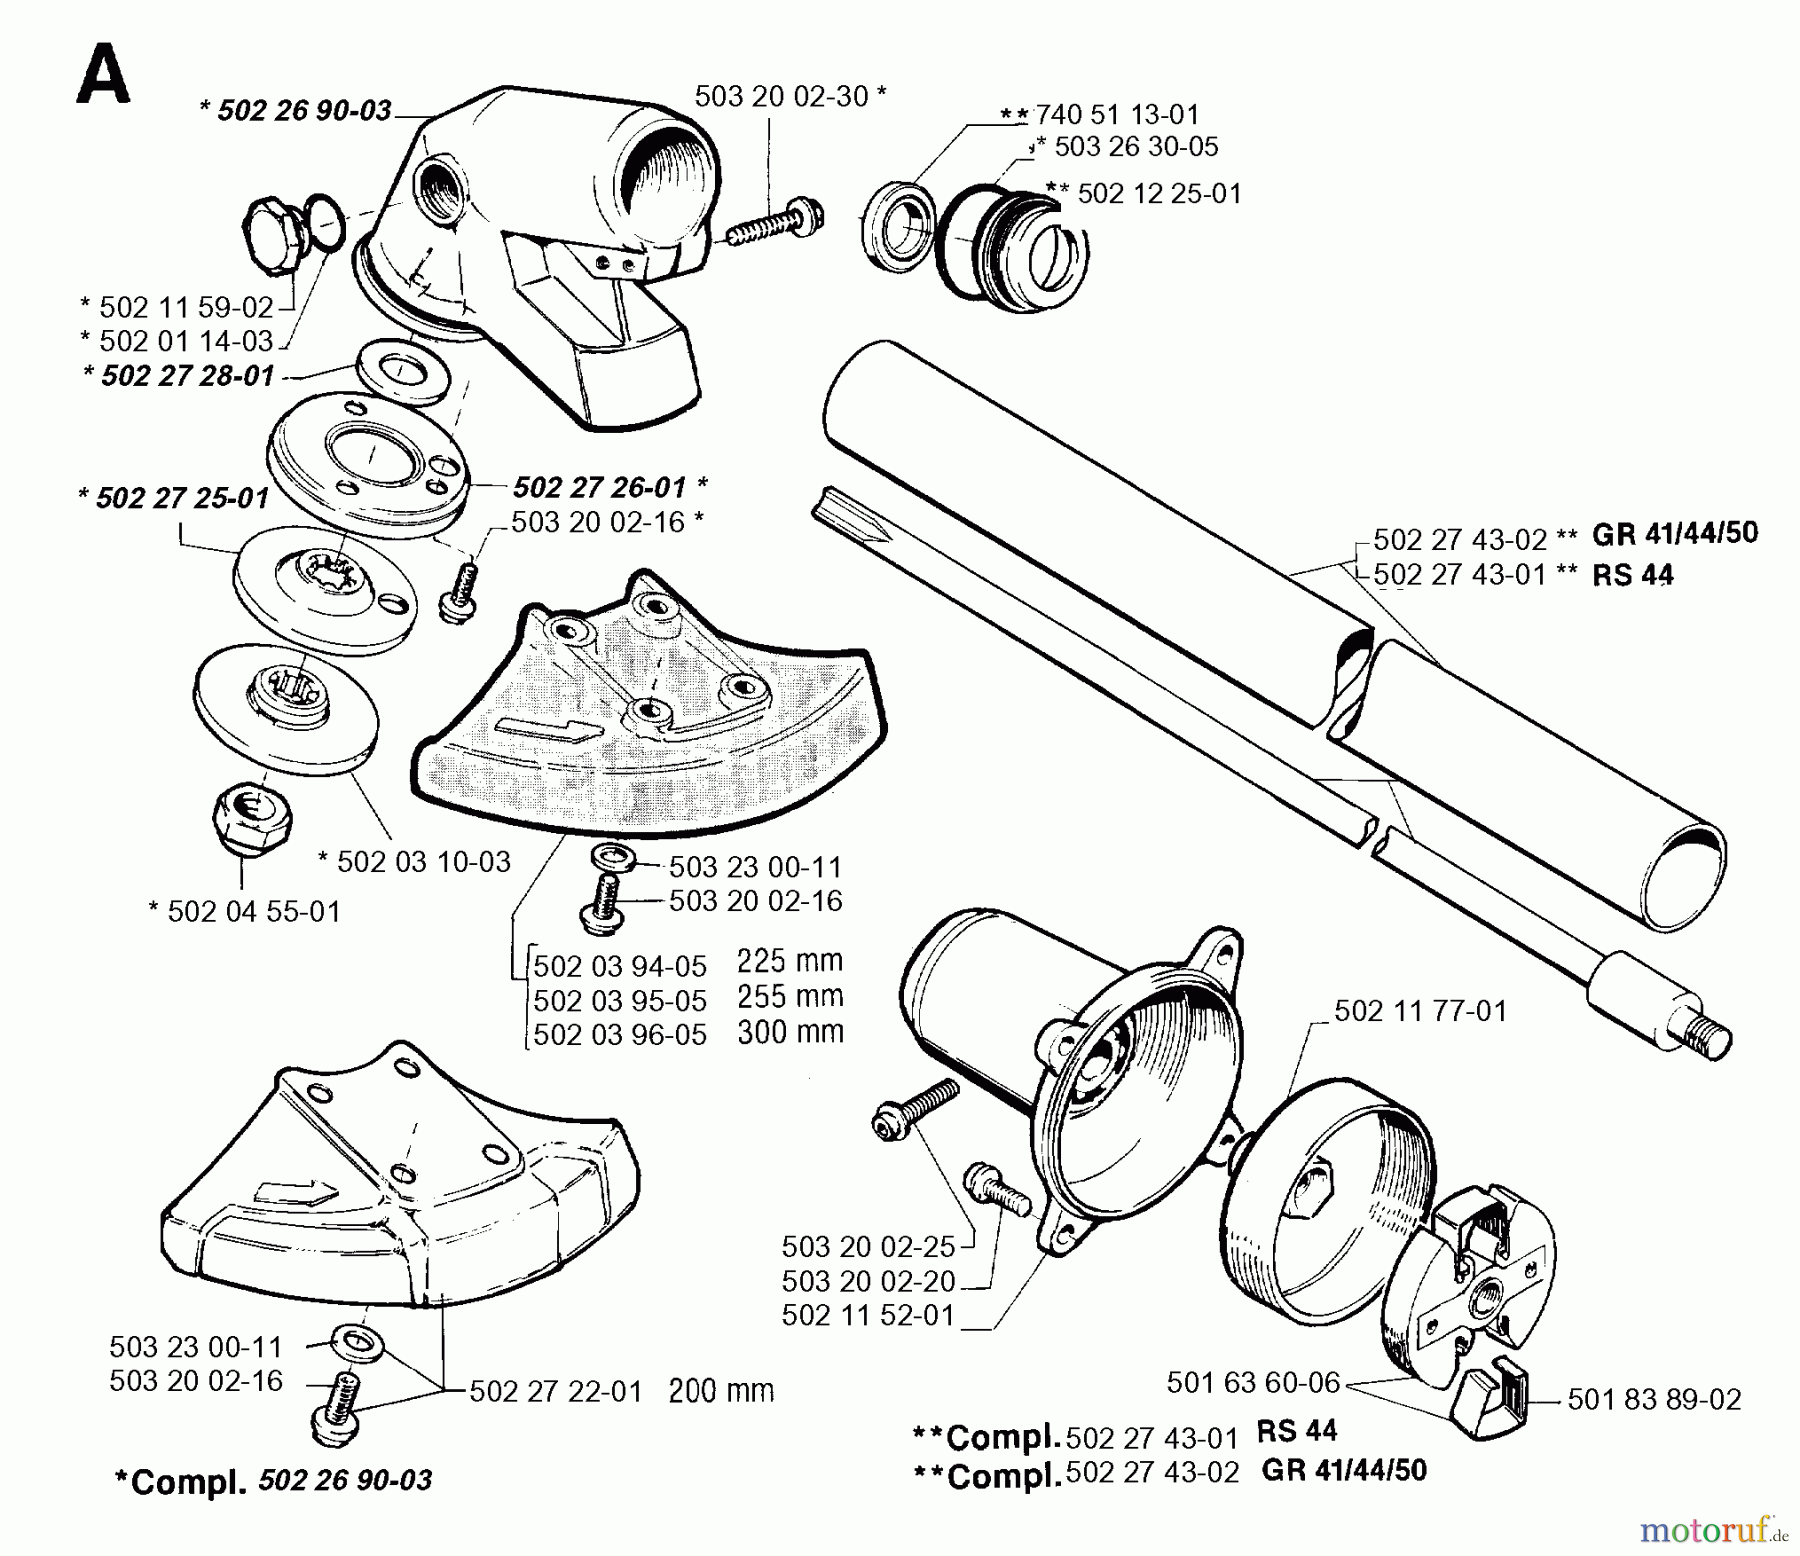  Jonsered Motorsensen, Trimmer GR41 - Jonsered String/Brush Trimmer (1994-03) BEVEL GEAR SHAFT